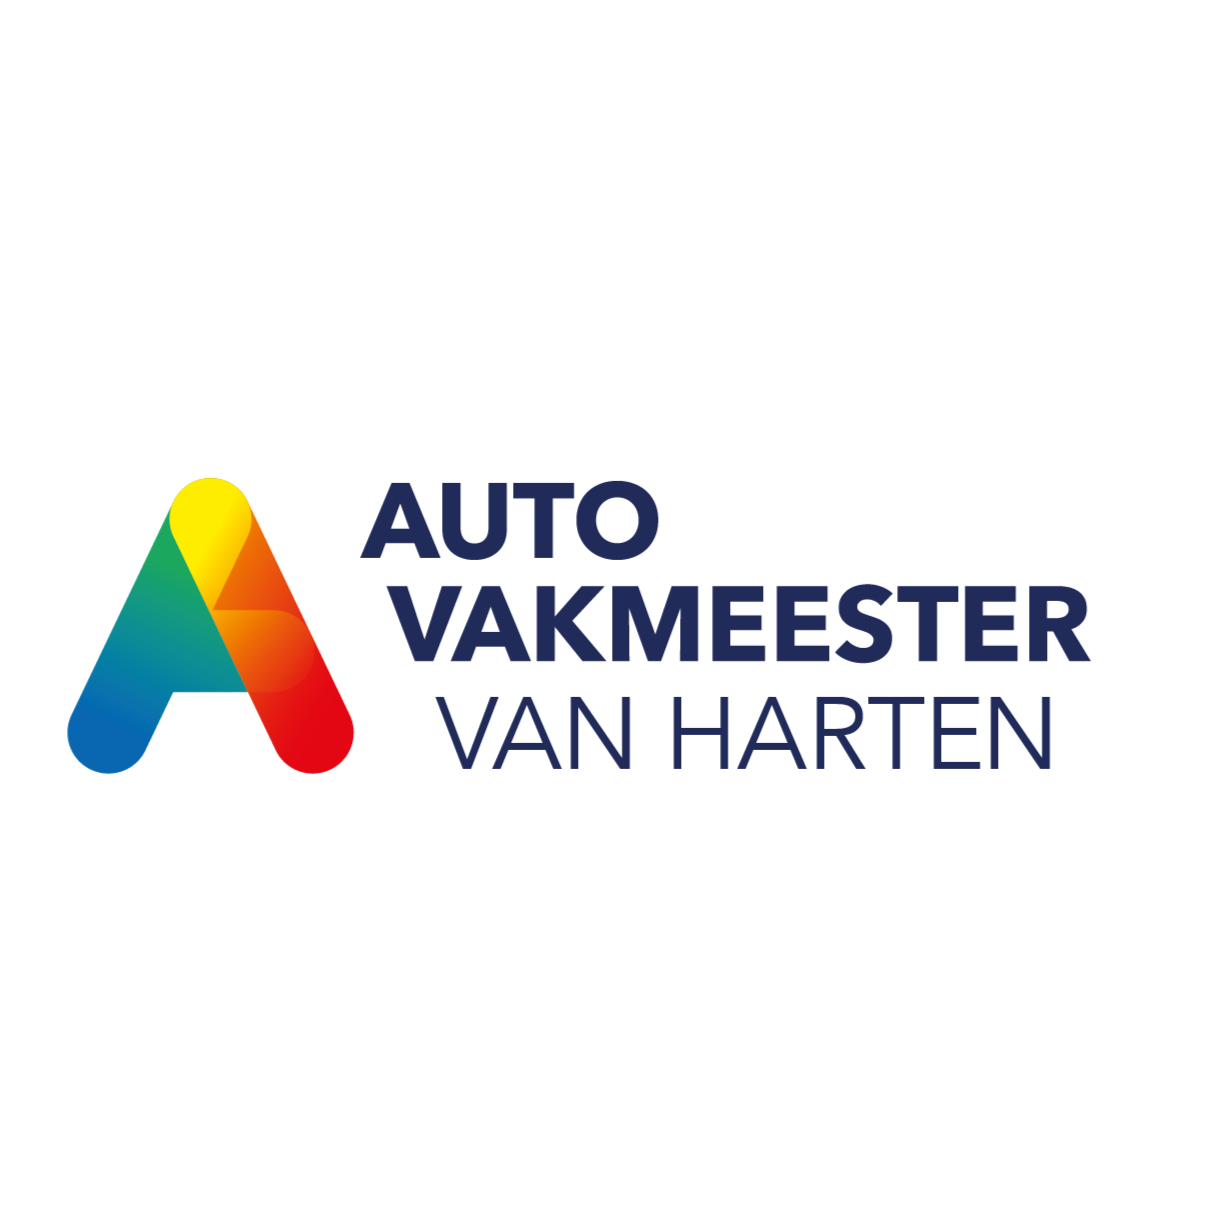 Autovakmeester van Harten Logo